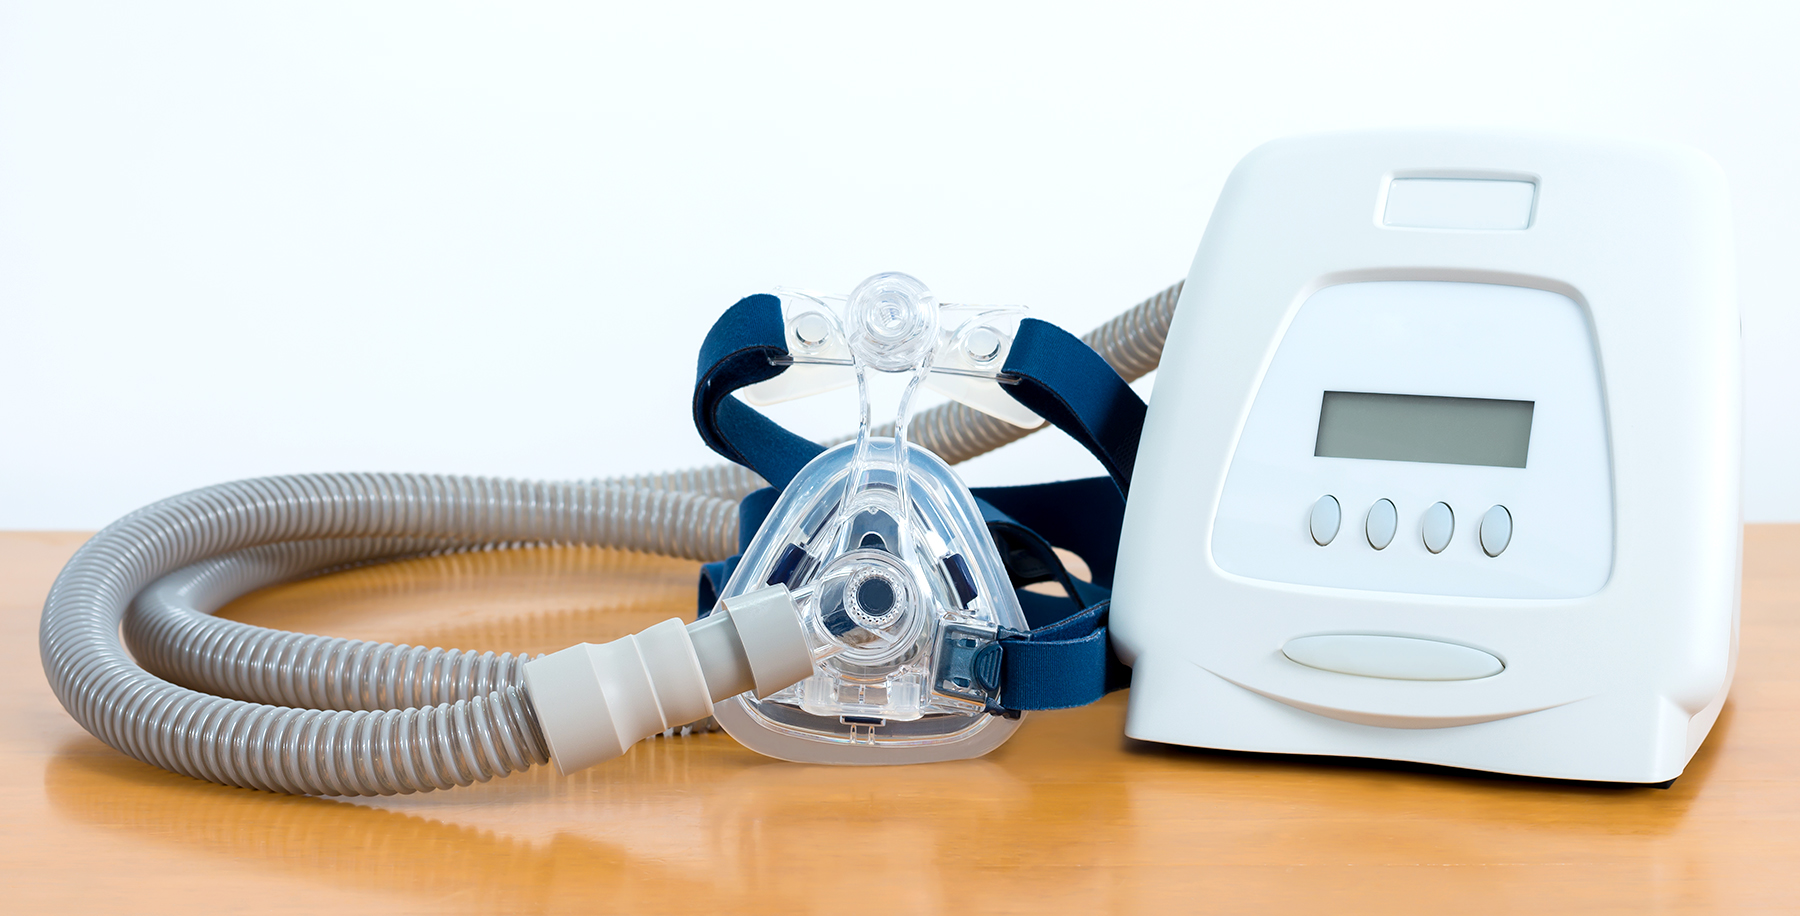 Reworked Philips CPAP/BiPAP Ventilators May Be Dangerous